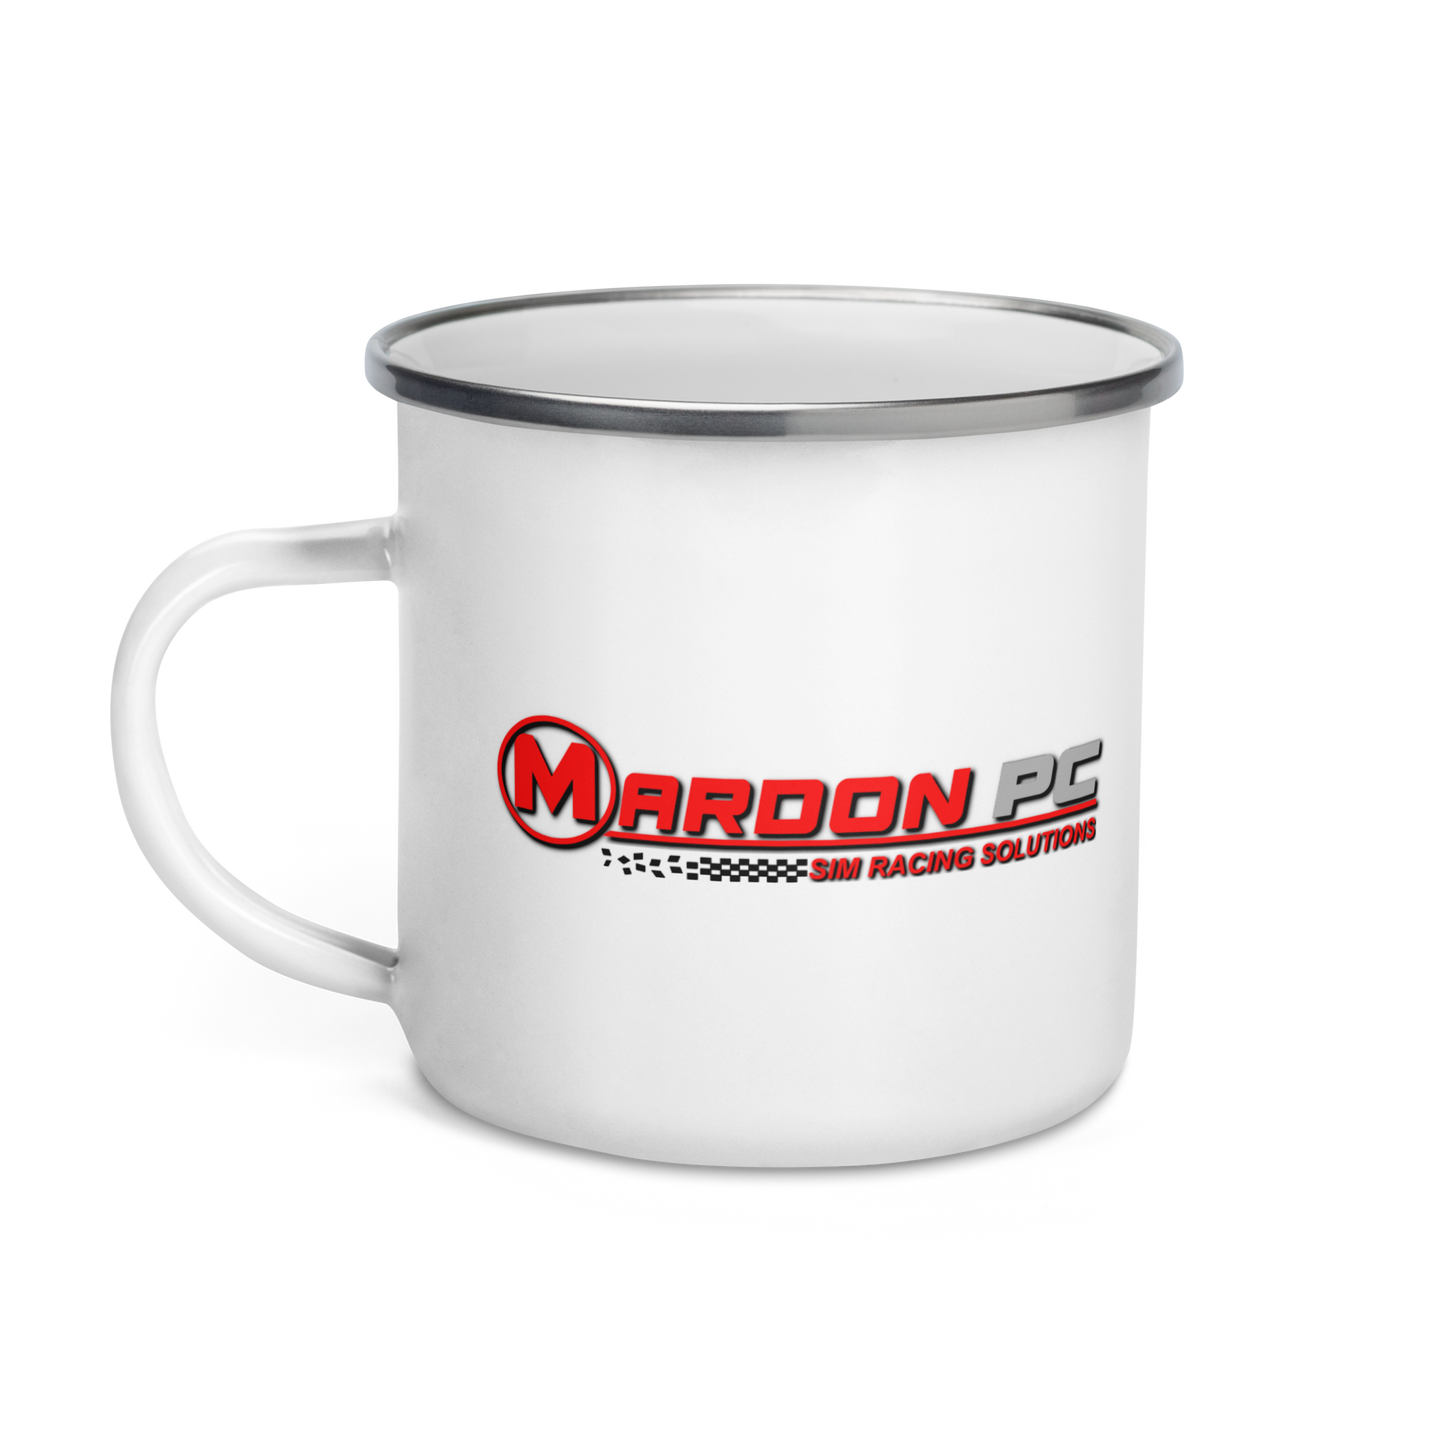 MARDON/TCSP Enamel Mug